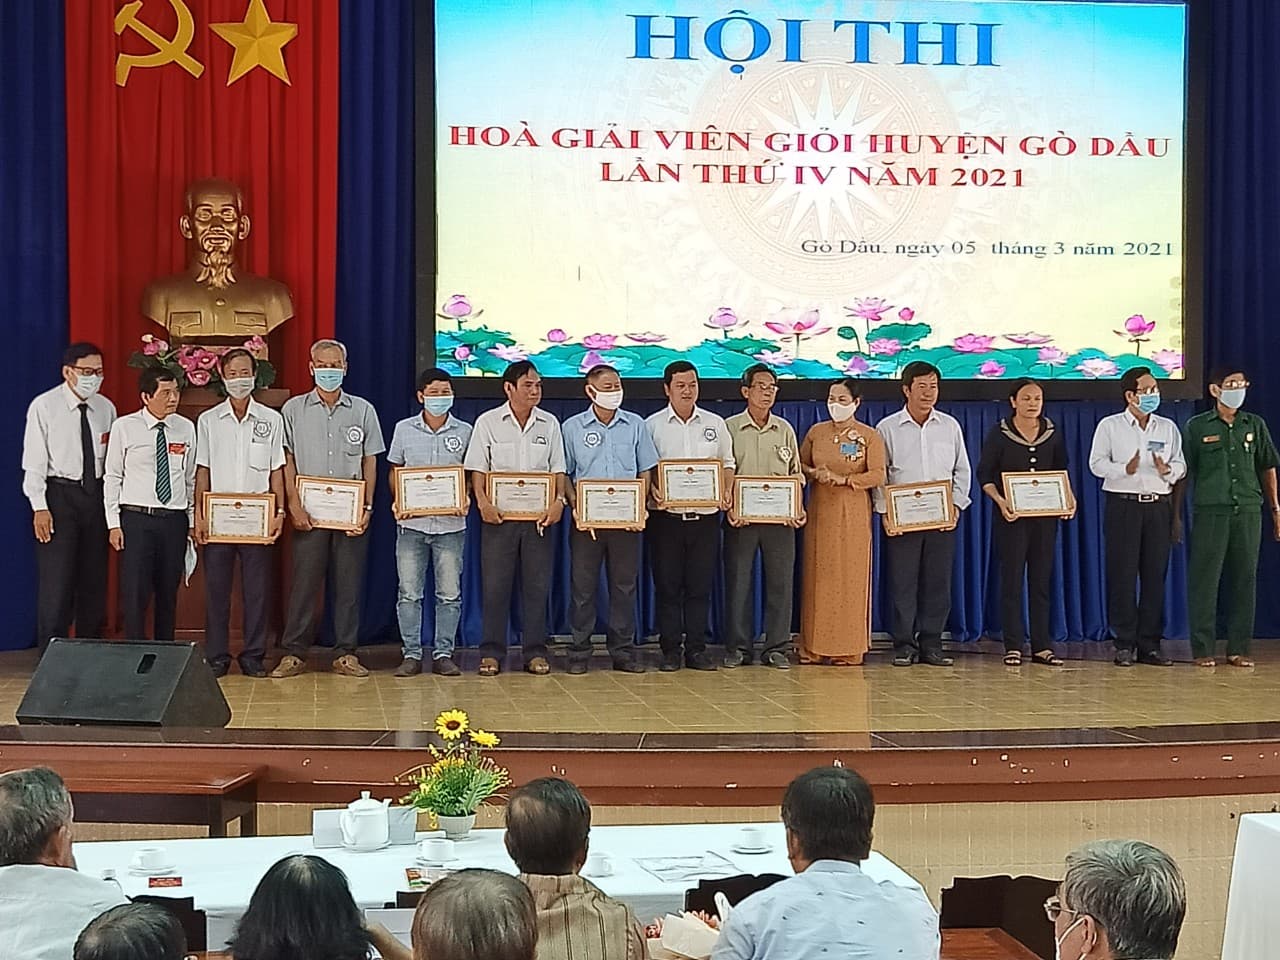 Ảnh: Bà Trần Thị Bích Vân - Trưởng phòng Tư pháp, Trưởng Ban tổ chức trao giải cho các đội thi